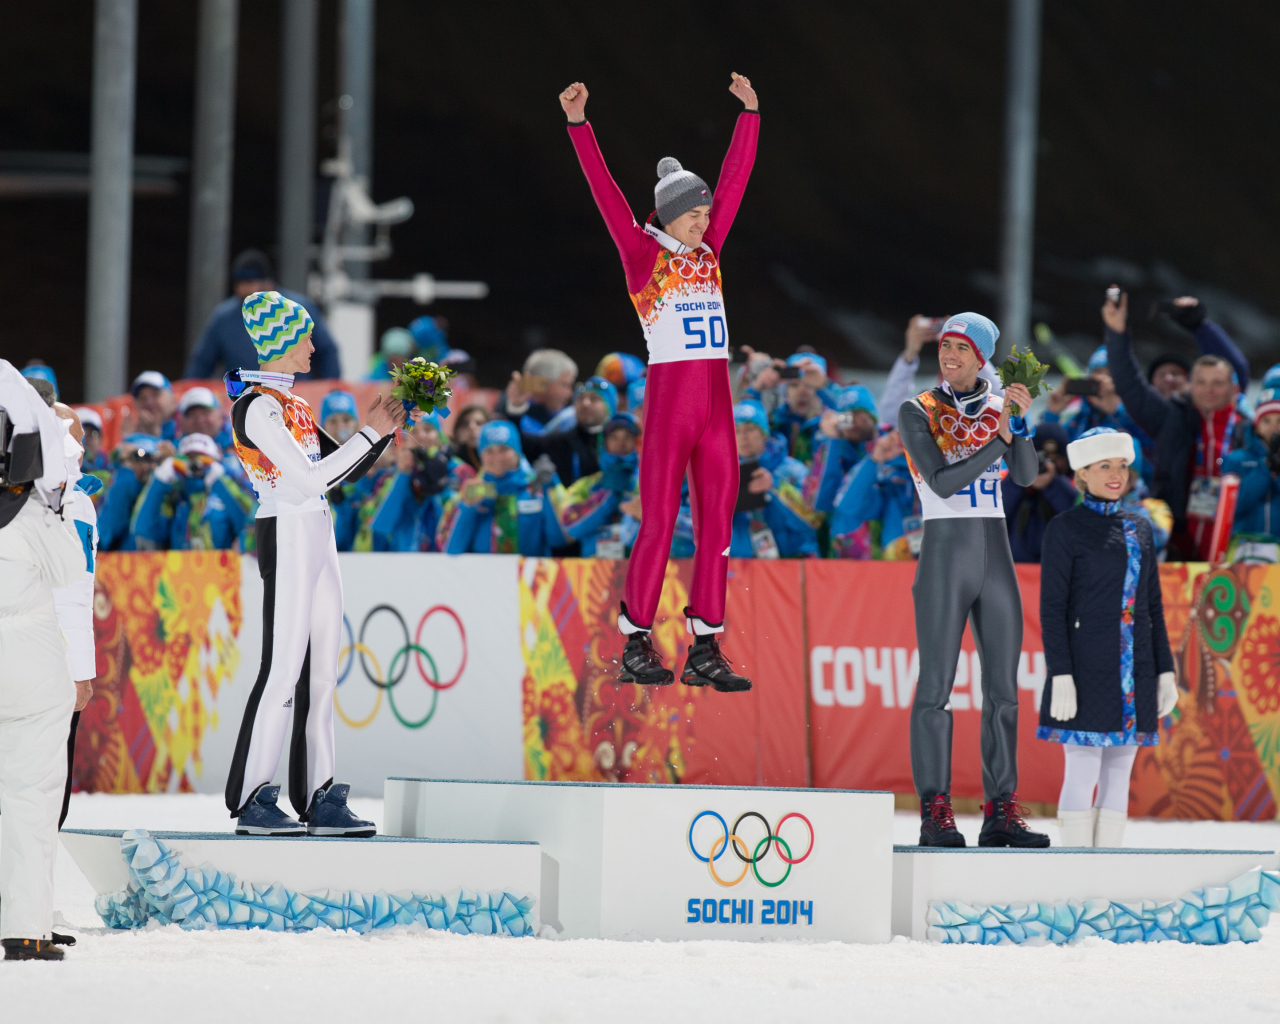 Обладатель золотых медалей  Камил Стох в дисциплине прыжки на лыжах с трамплина 